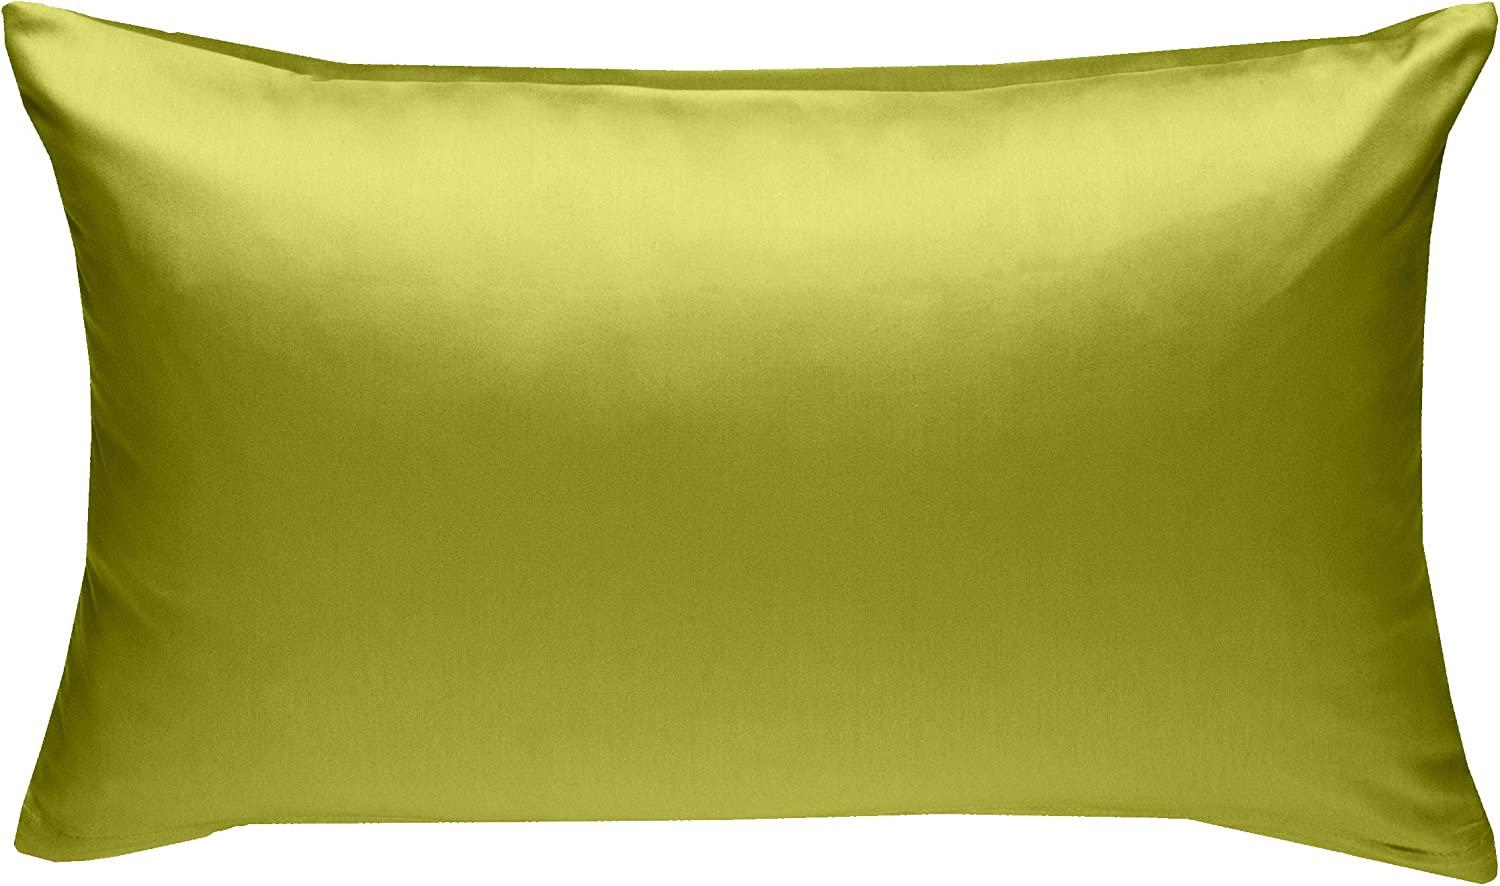 Bettwaesche-mit-Stil Mako-Satin / Baumwollsatin Bettwäsche uni / einfarbig grün Kissenbezug 50x70 cm Bild 1